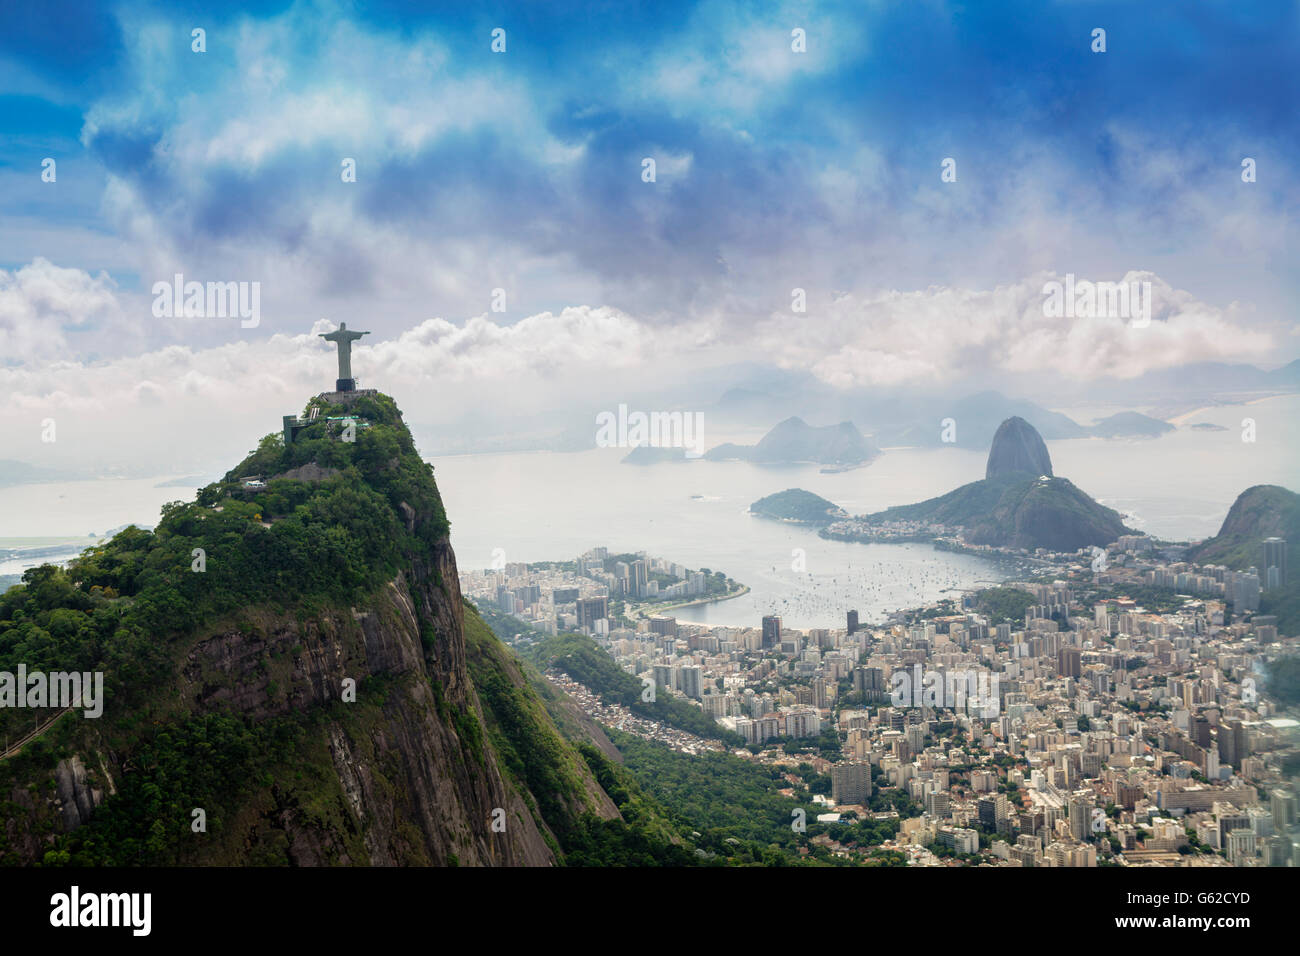 La liste de l'UNESCO paysage de Rio de Janeiro, avec le Christ Rédempteur (Cristo Redentor) statue sur le Corcovado, le Pain de Sucre et Banque D'Images